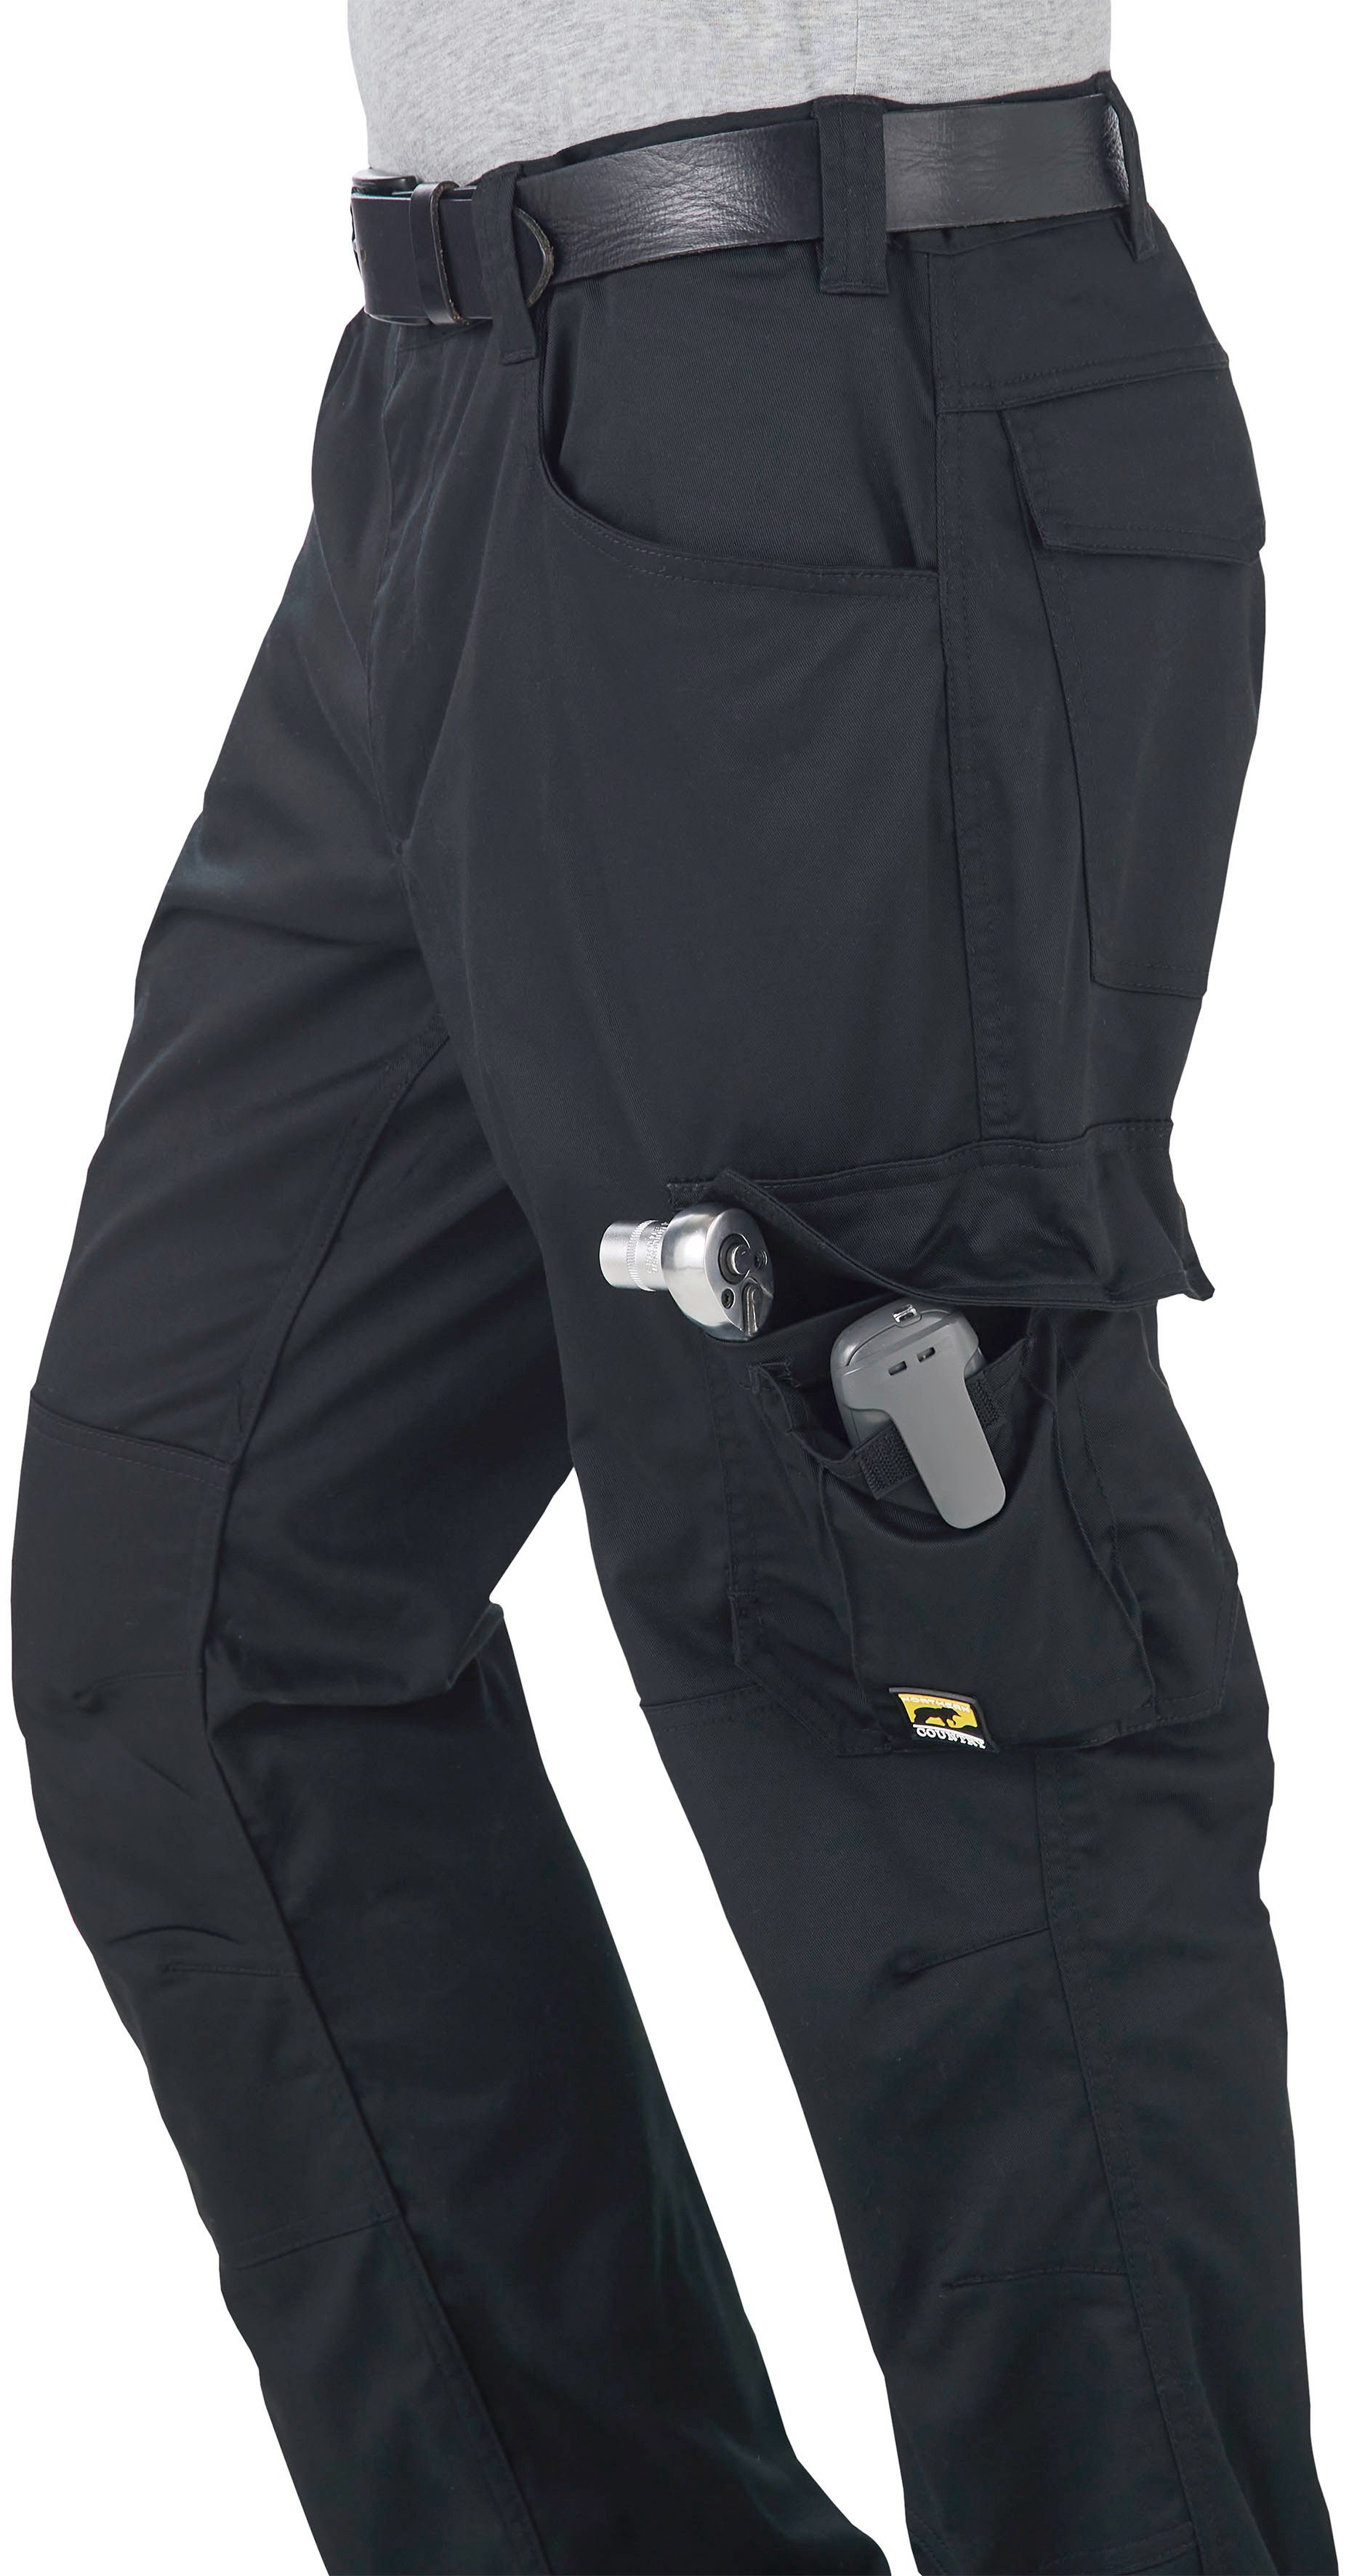 Northern Country Arbeitshose Taschen Verlängerung Materialmix: flex 7 + ergonomisch durch der Kniebesatz) (einfache bequem weich, light leicht und 3cm, um Hose flexibel